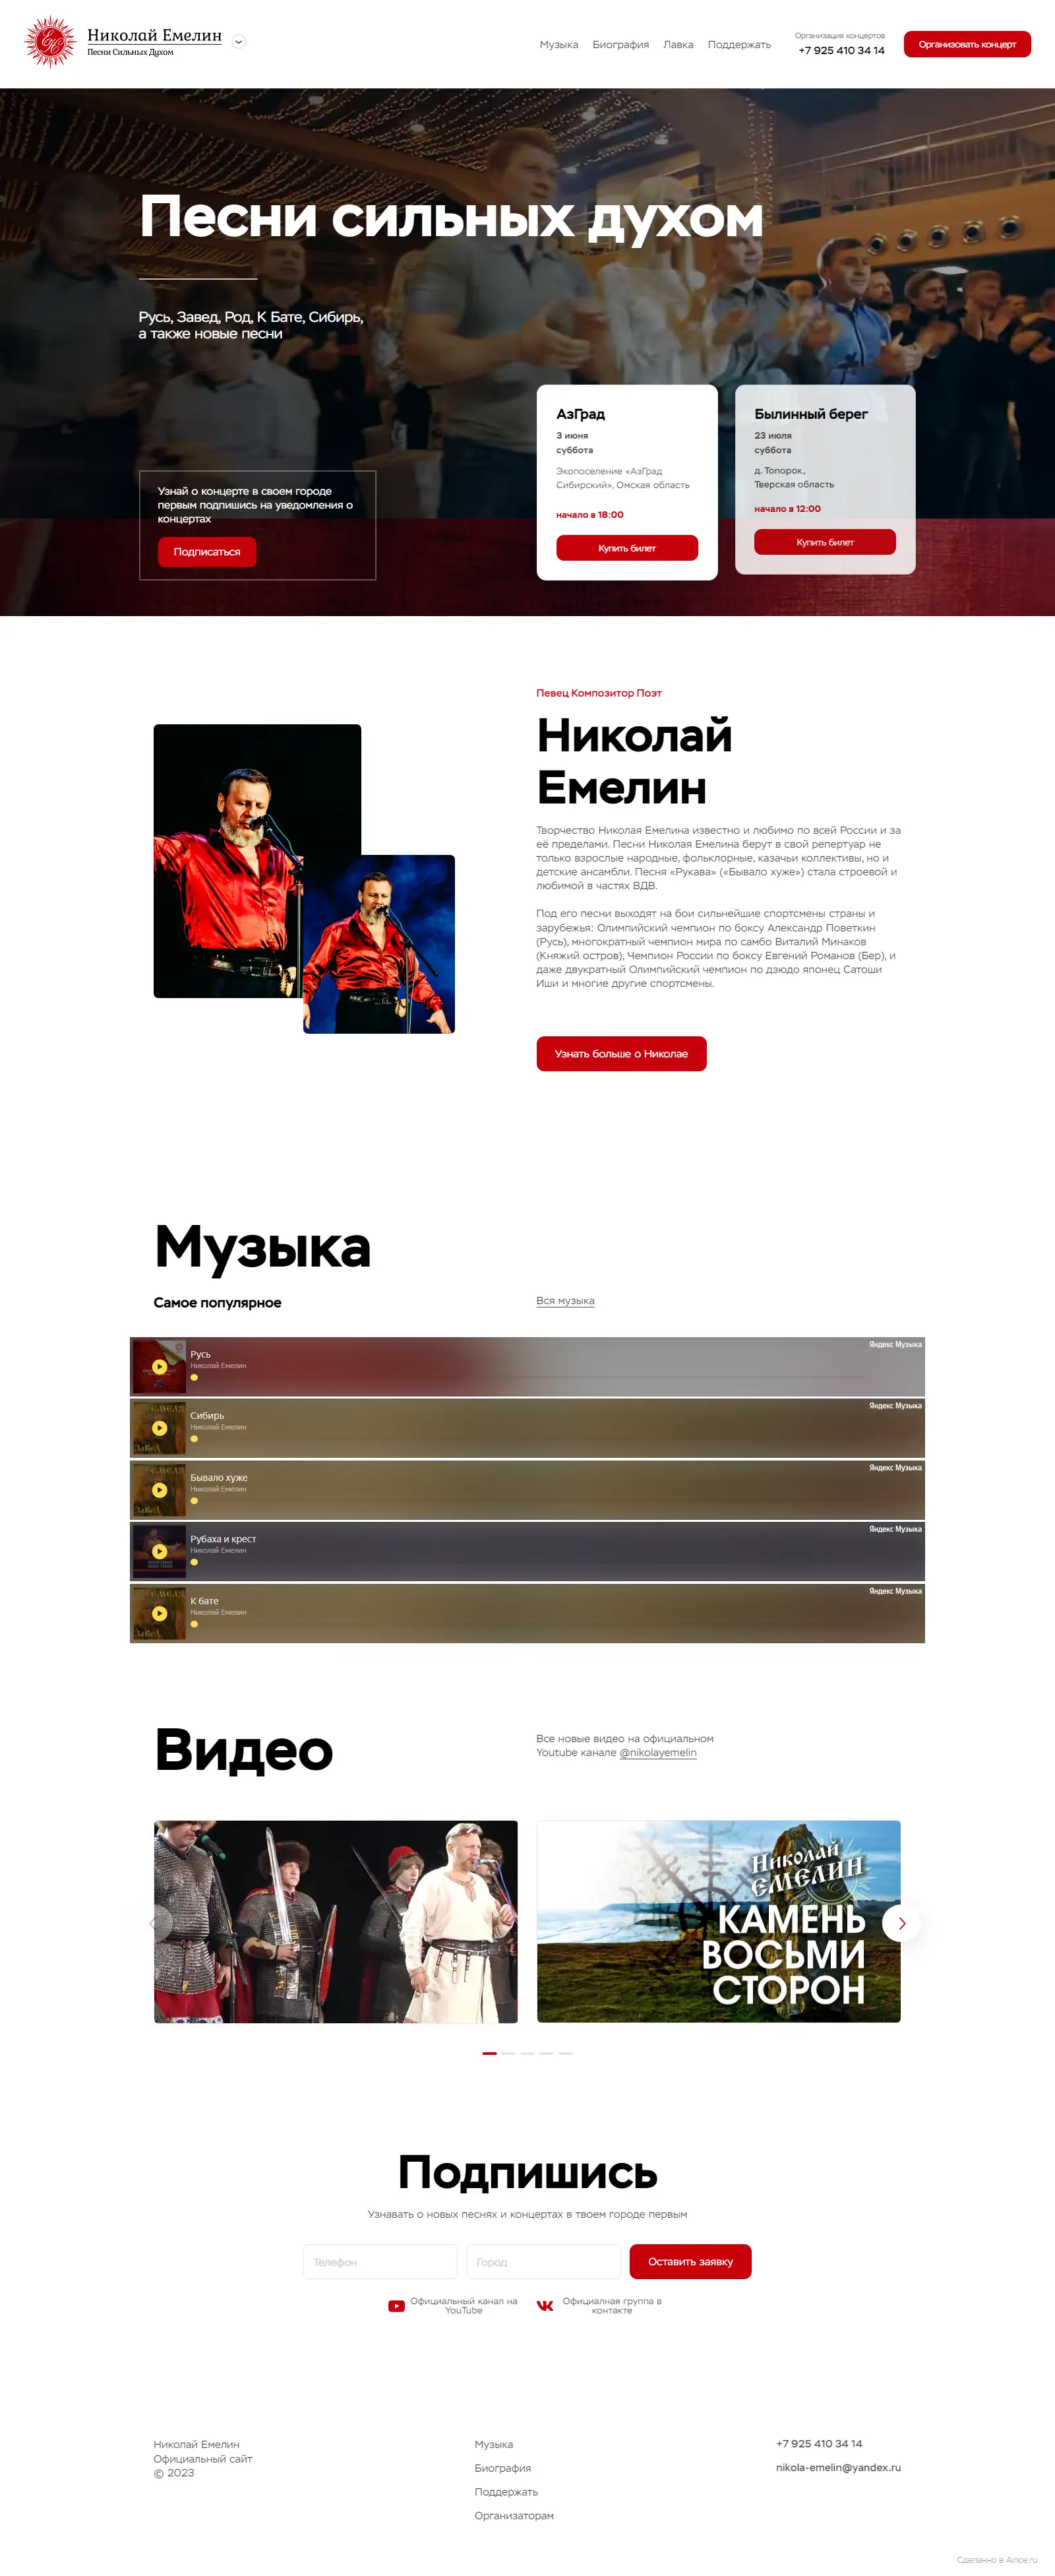 Официальный сайт Николая Емелина